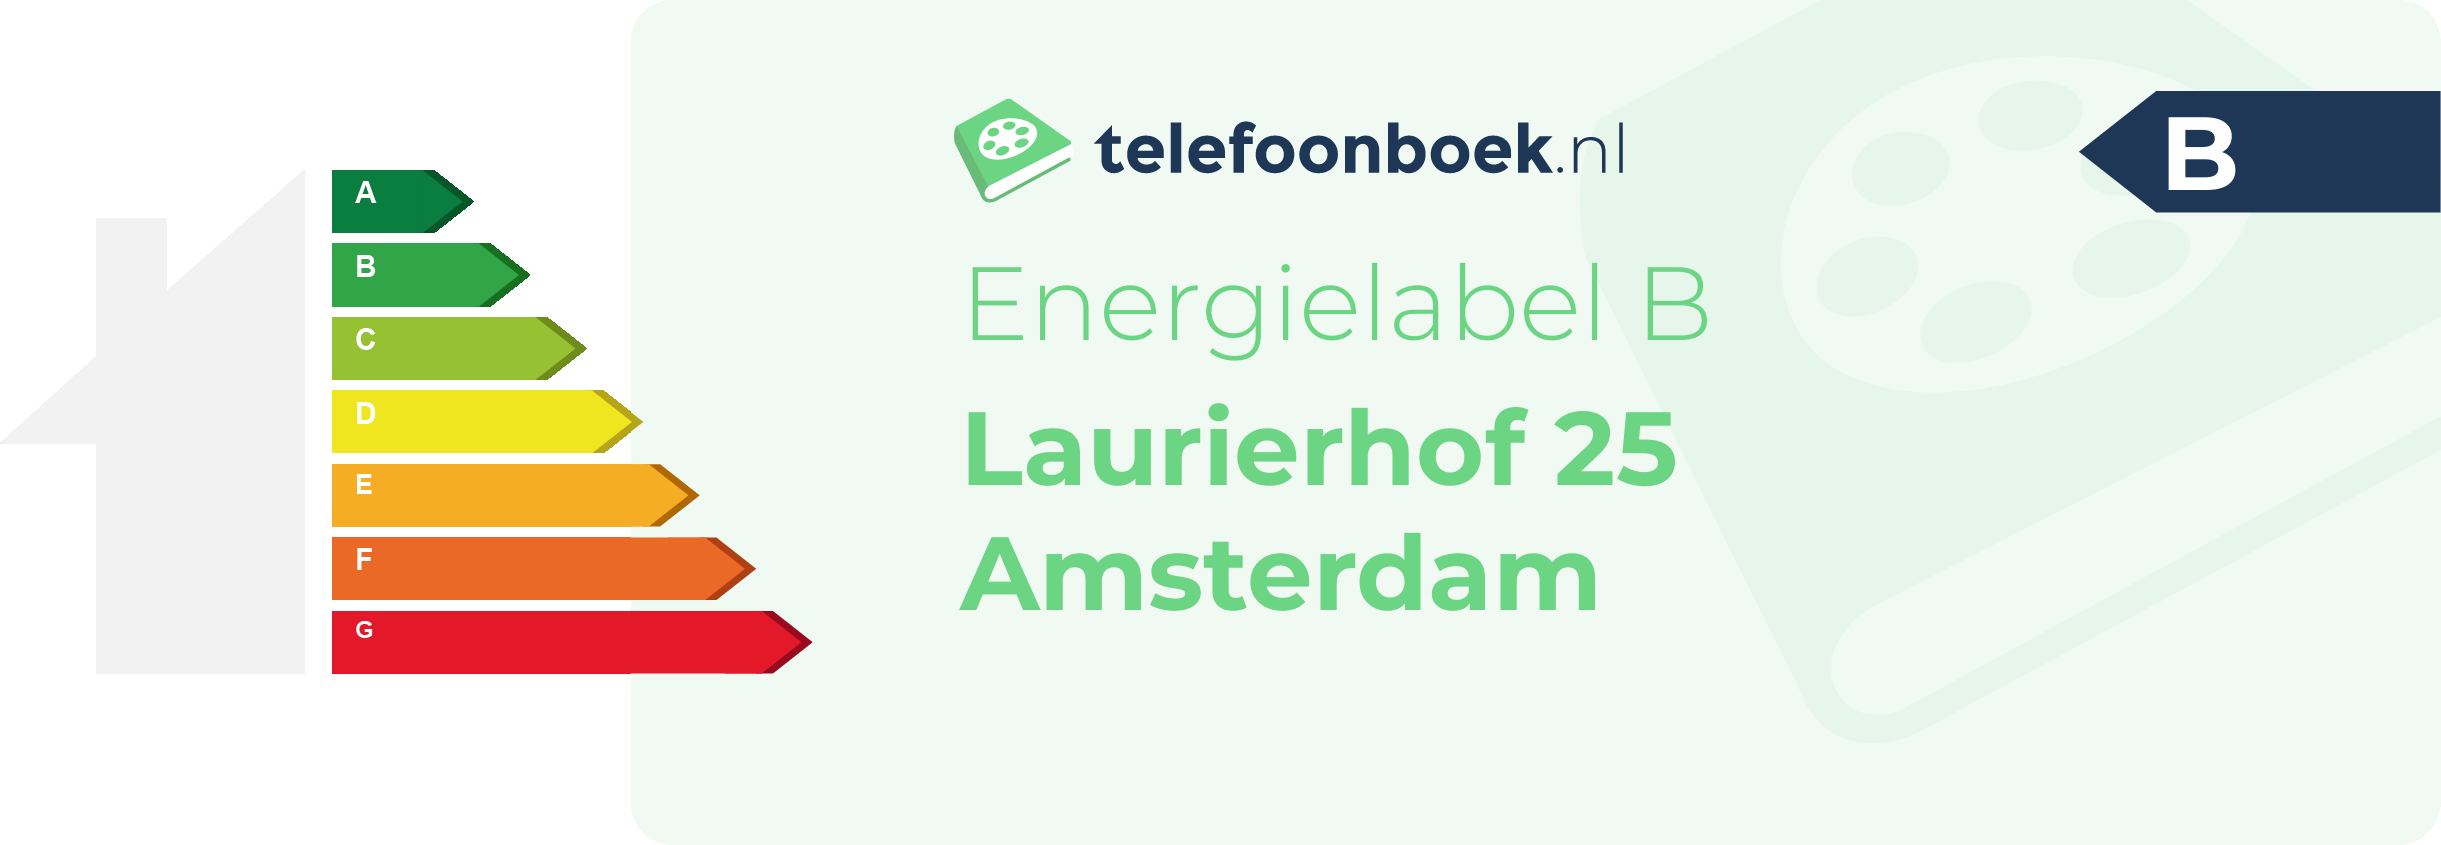 Energielabel Laurierhof 25 Amsterdam